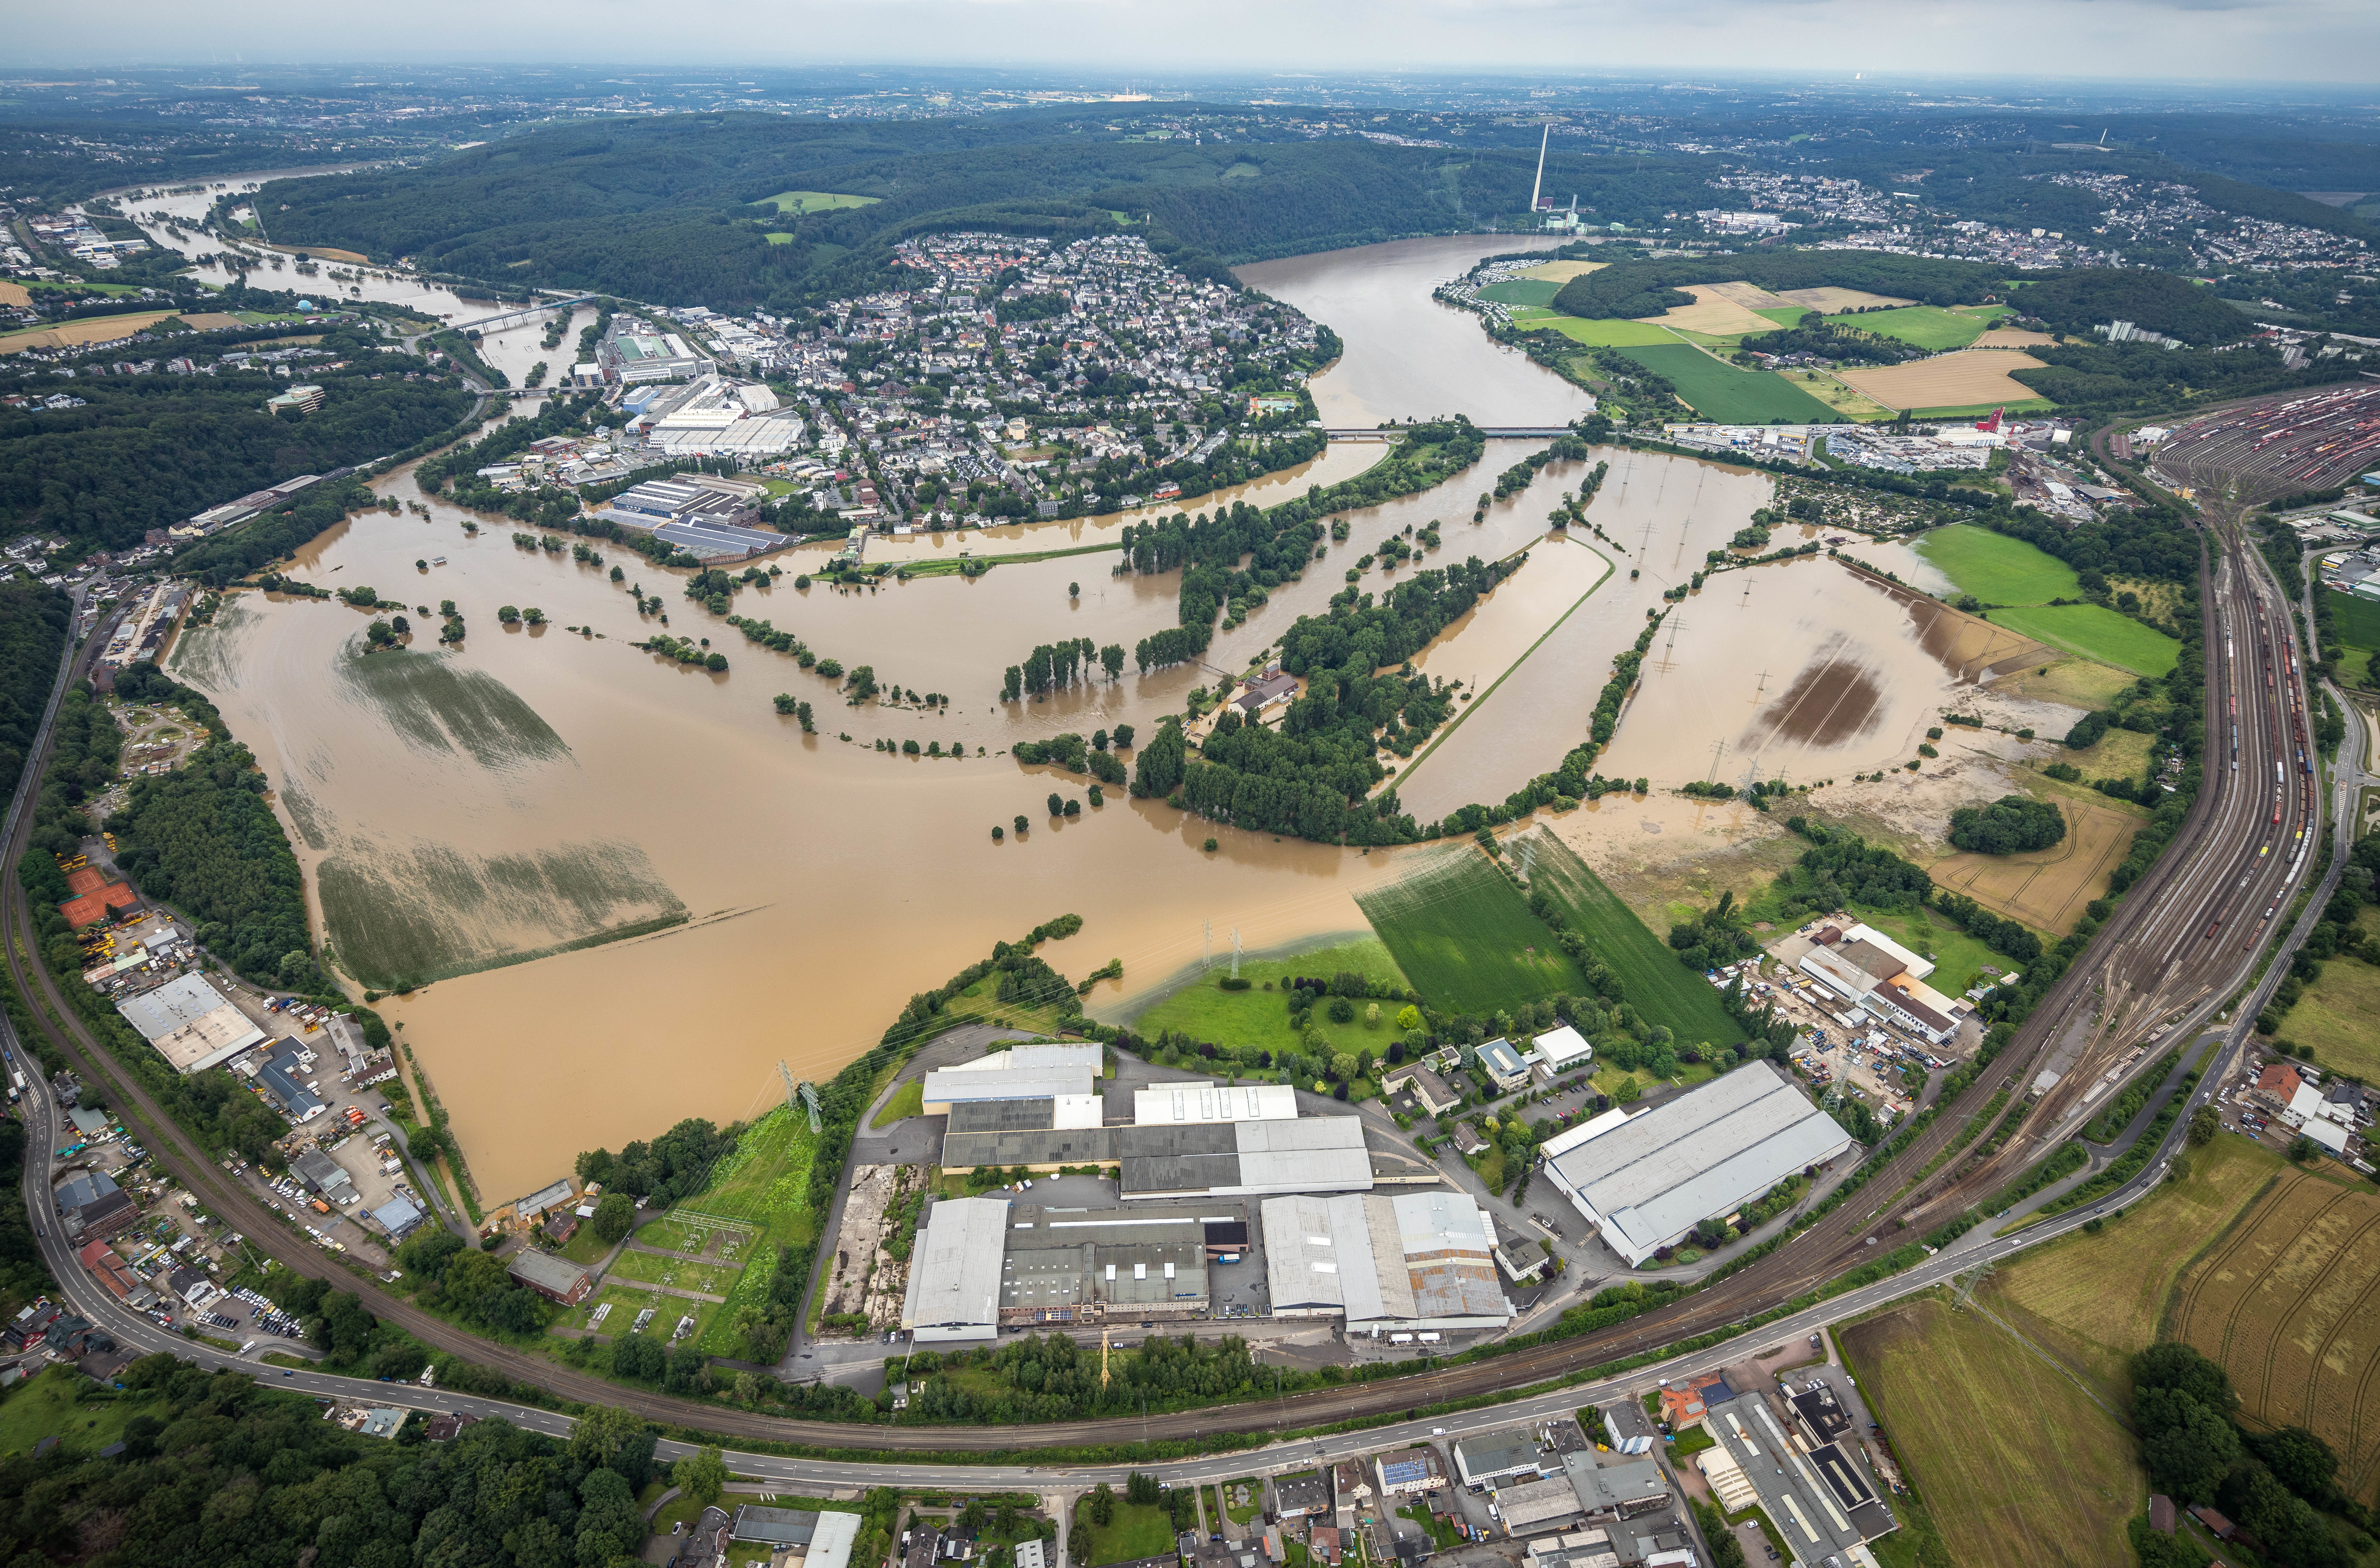 Bild 2: Hochwasser im Juli 2021; Übersicht über die Stadt Wetter unterhalb des Harkortsees, Luftbild: Hans Blossey